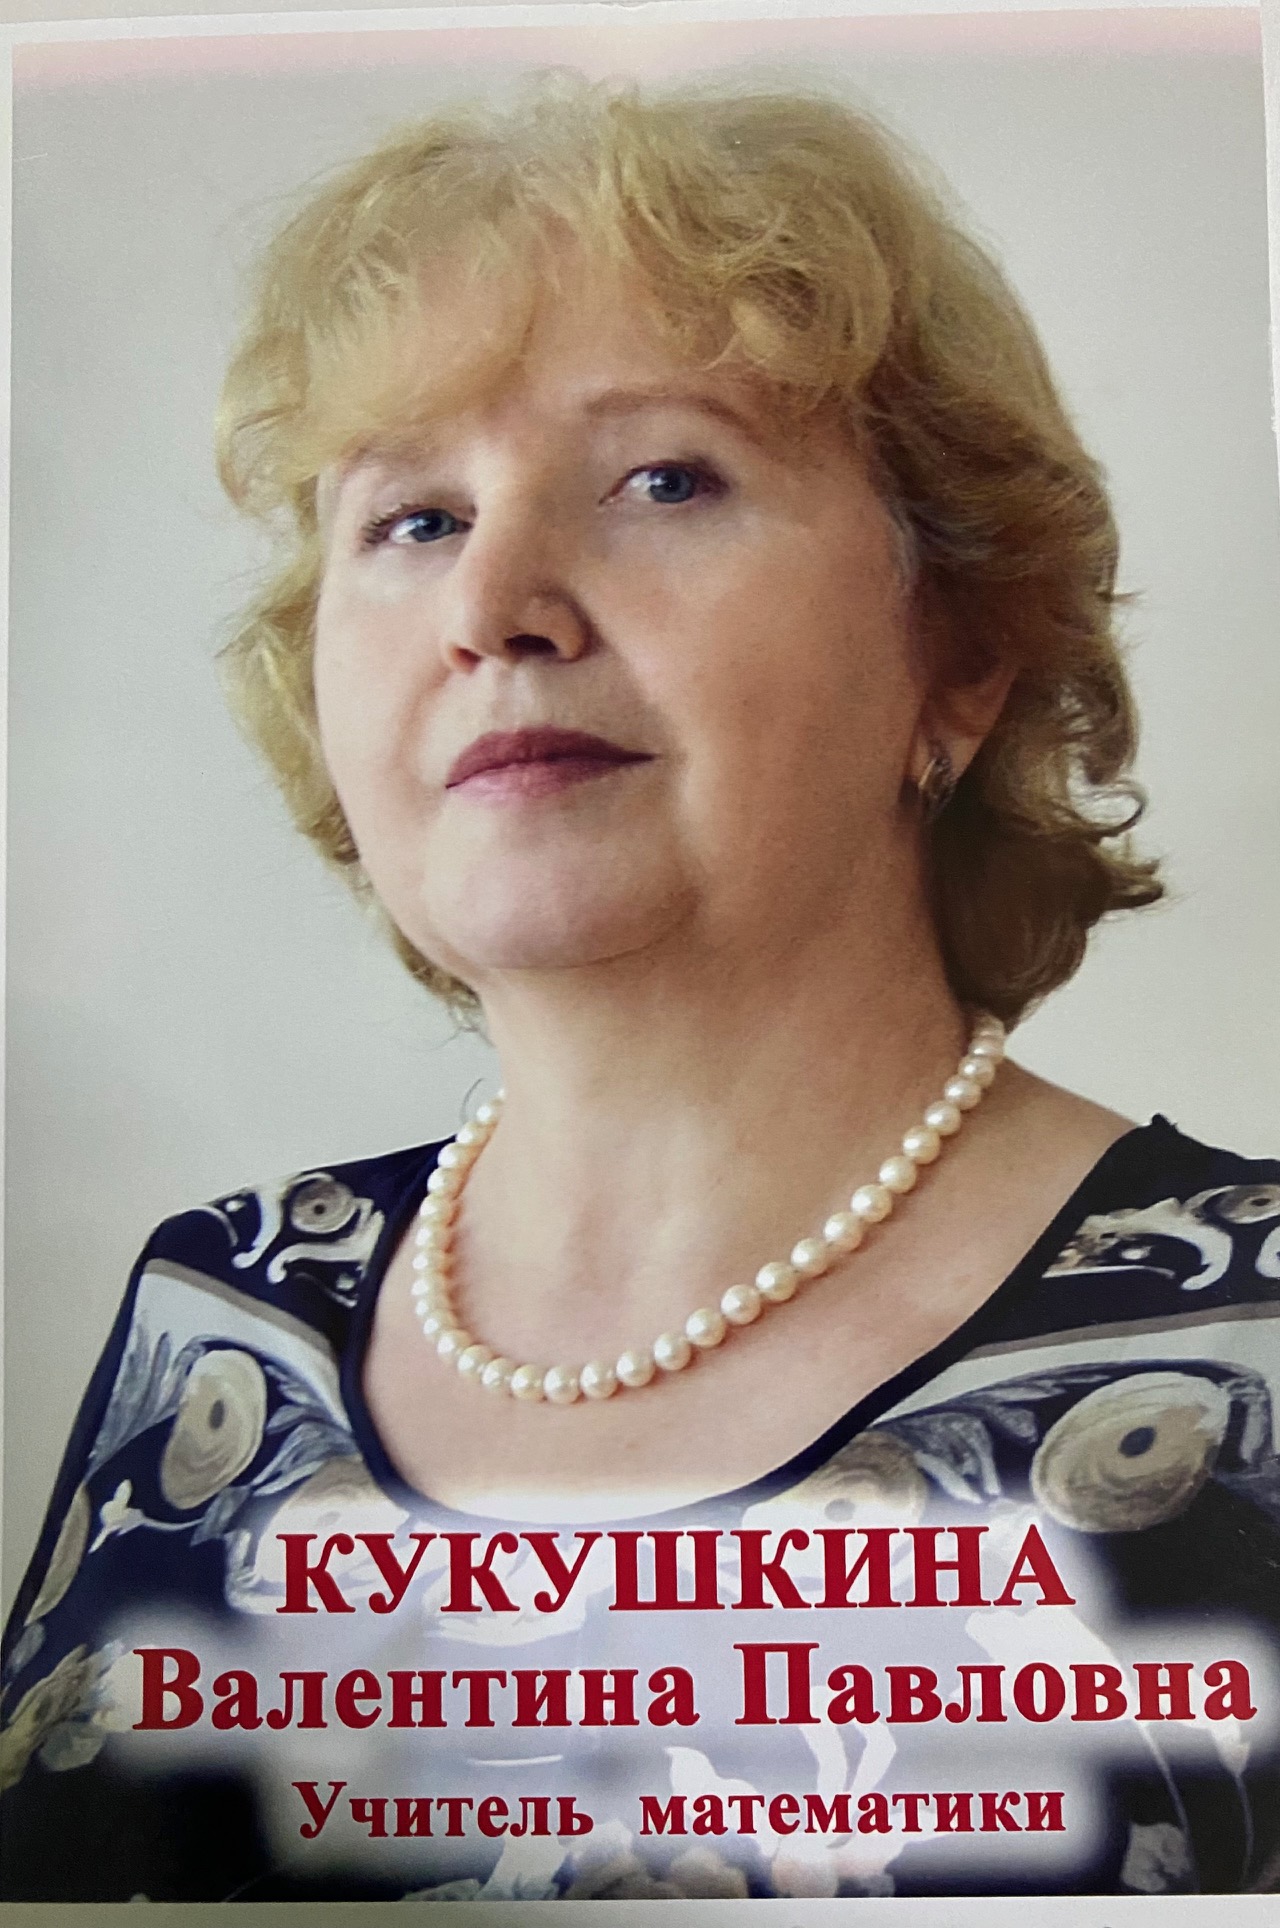 Кукушкина Валентина Павловна.